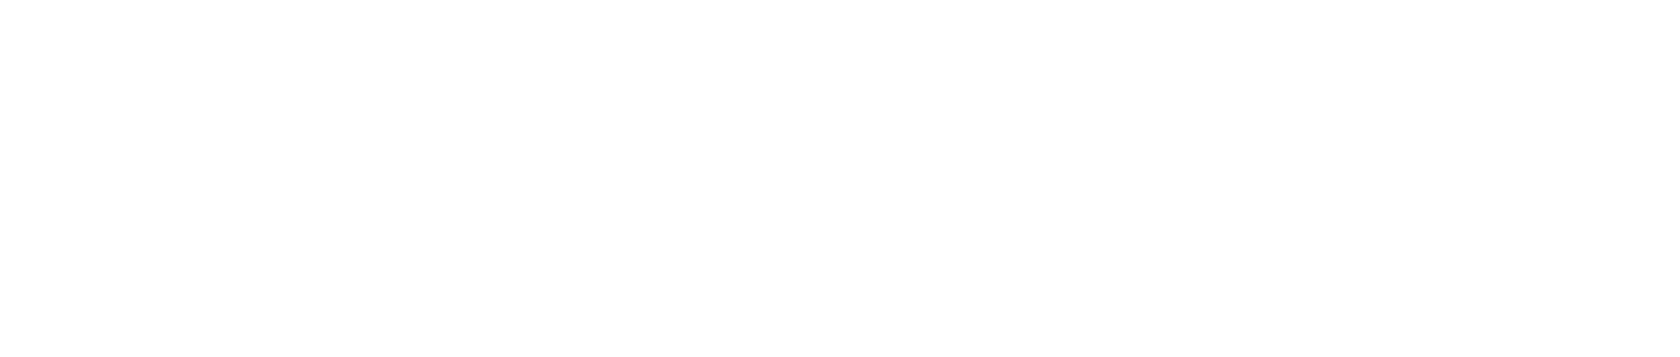 Варианты логотипа компании по подготовке курсовых и дипломных работ